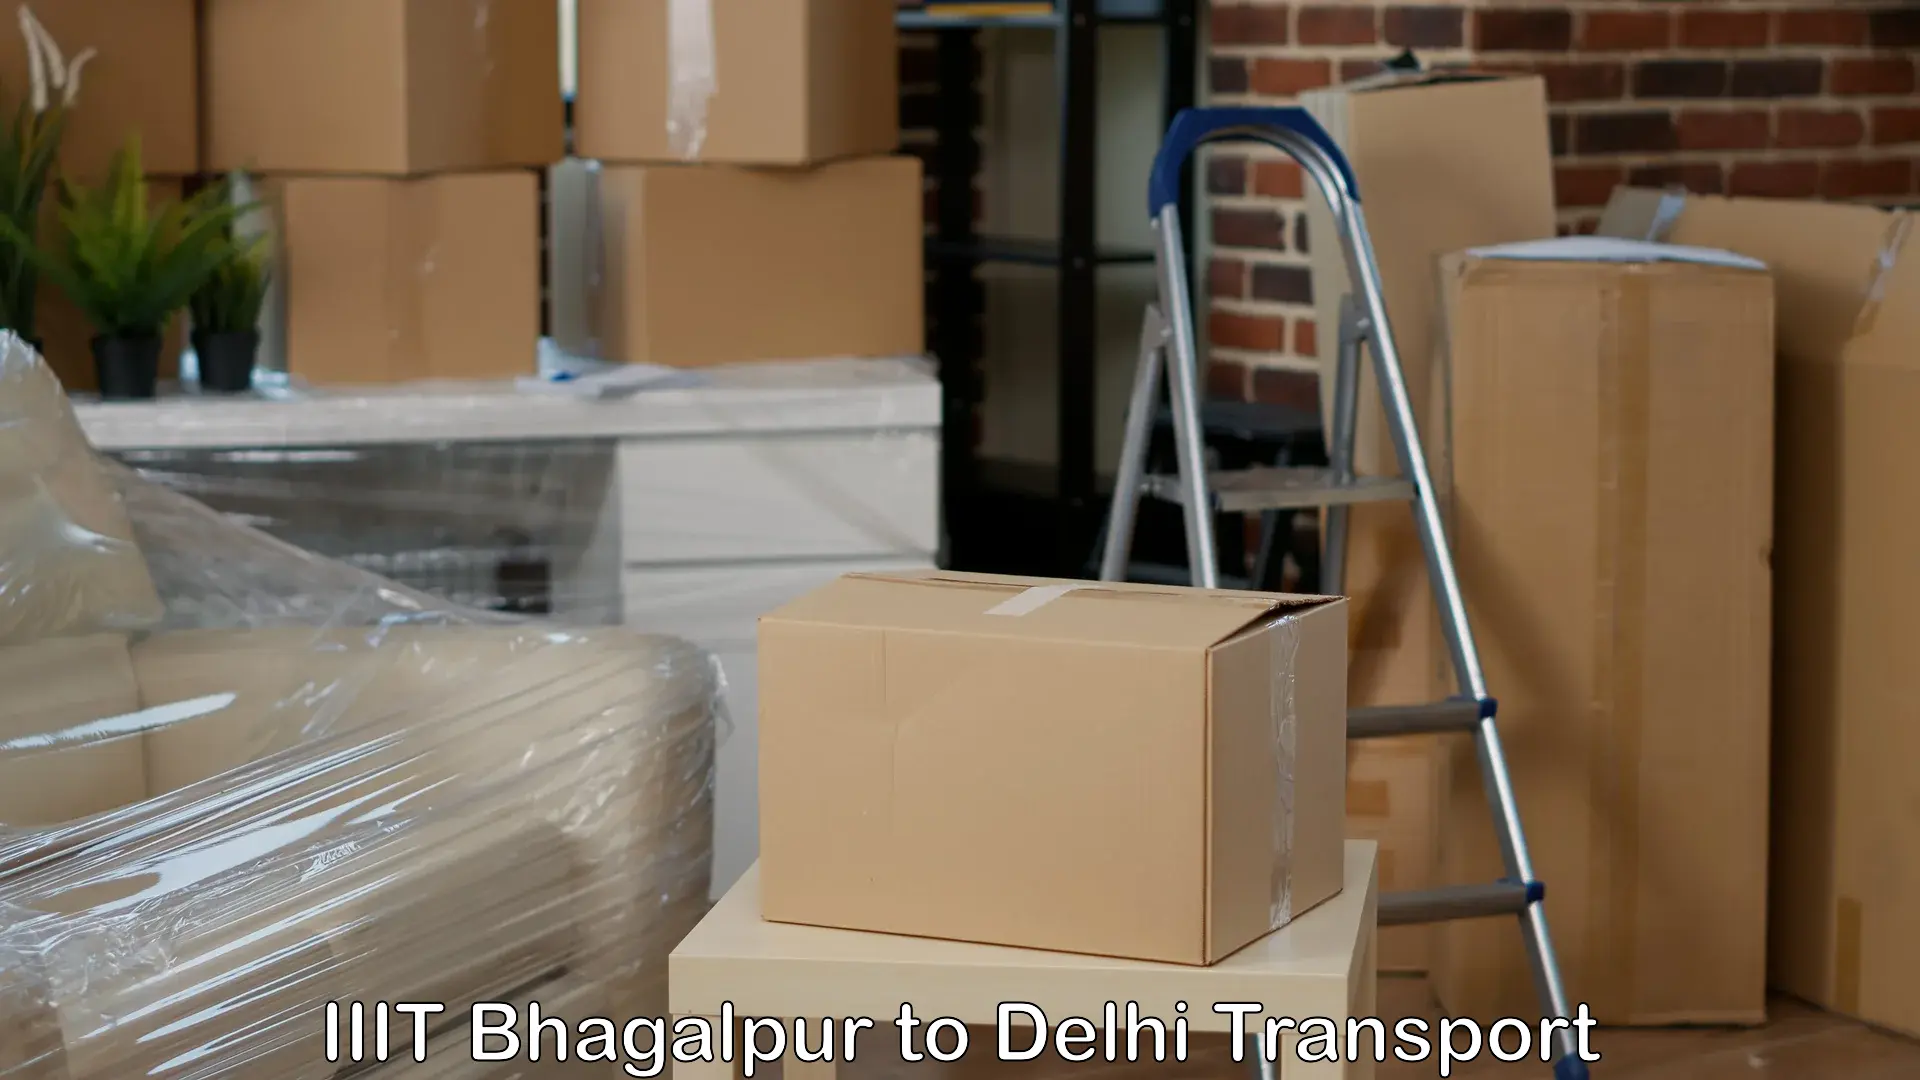 Door to door transport services IIIT Bhagalpur to Delhi